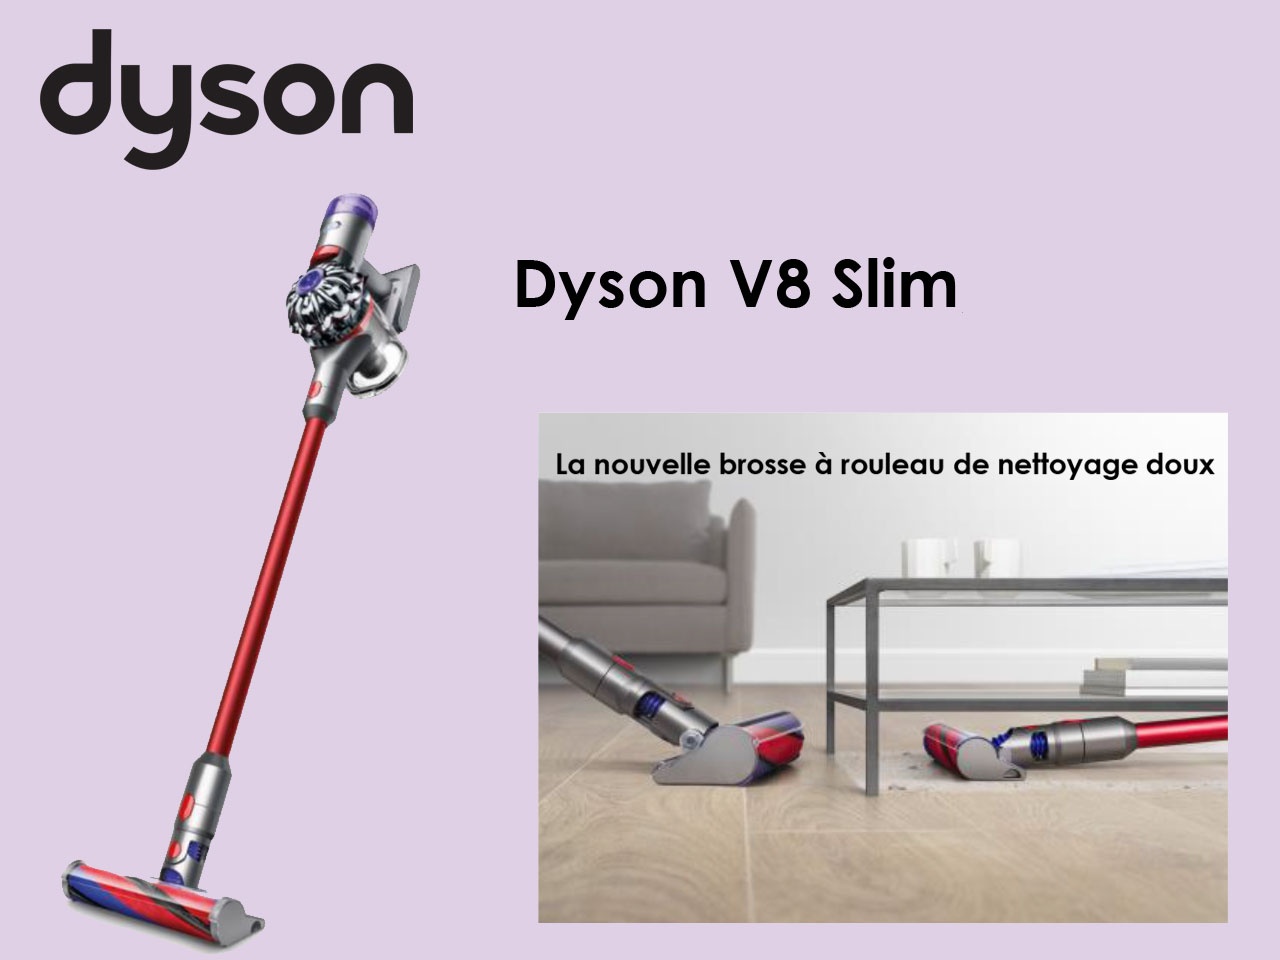 Dyson présente l'aspirateur Dyson V8 Slim, le plus léger des